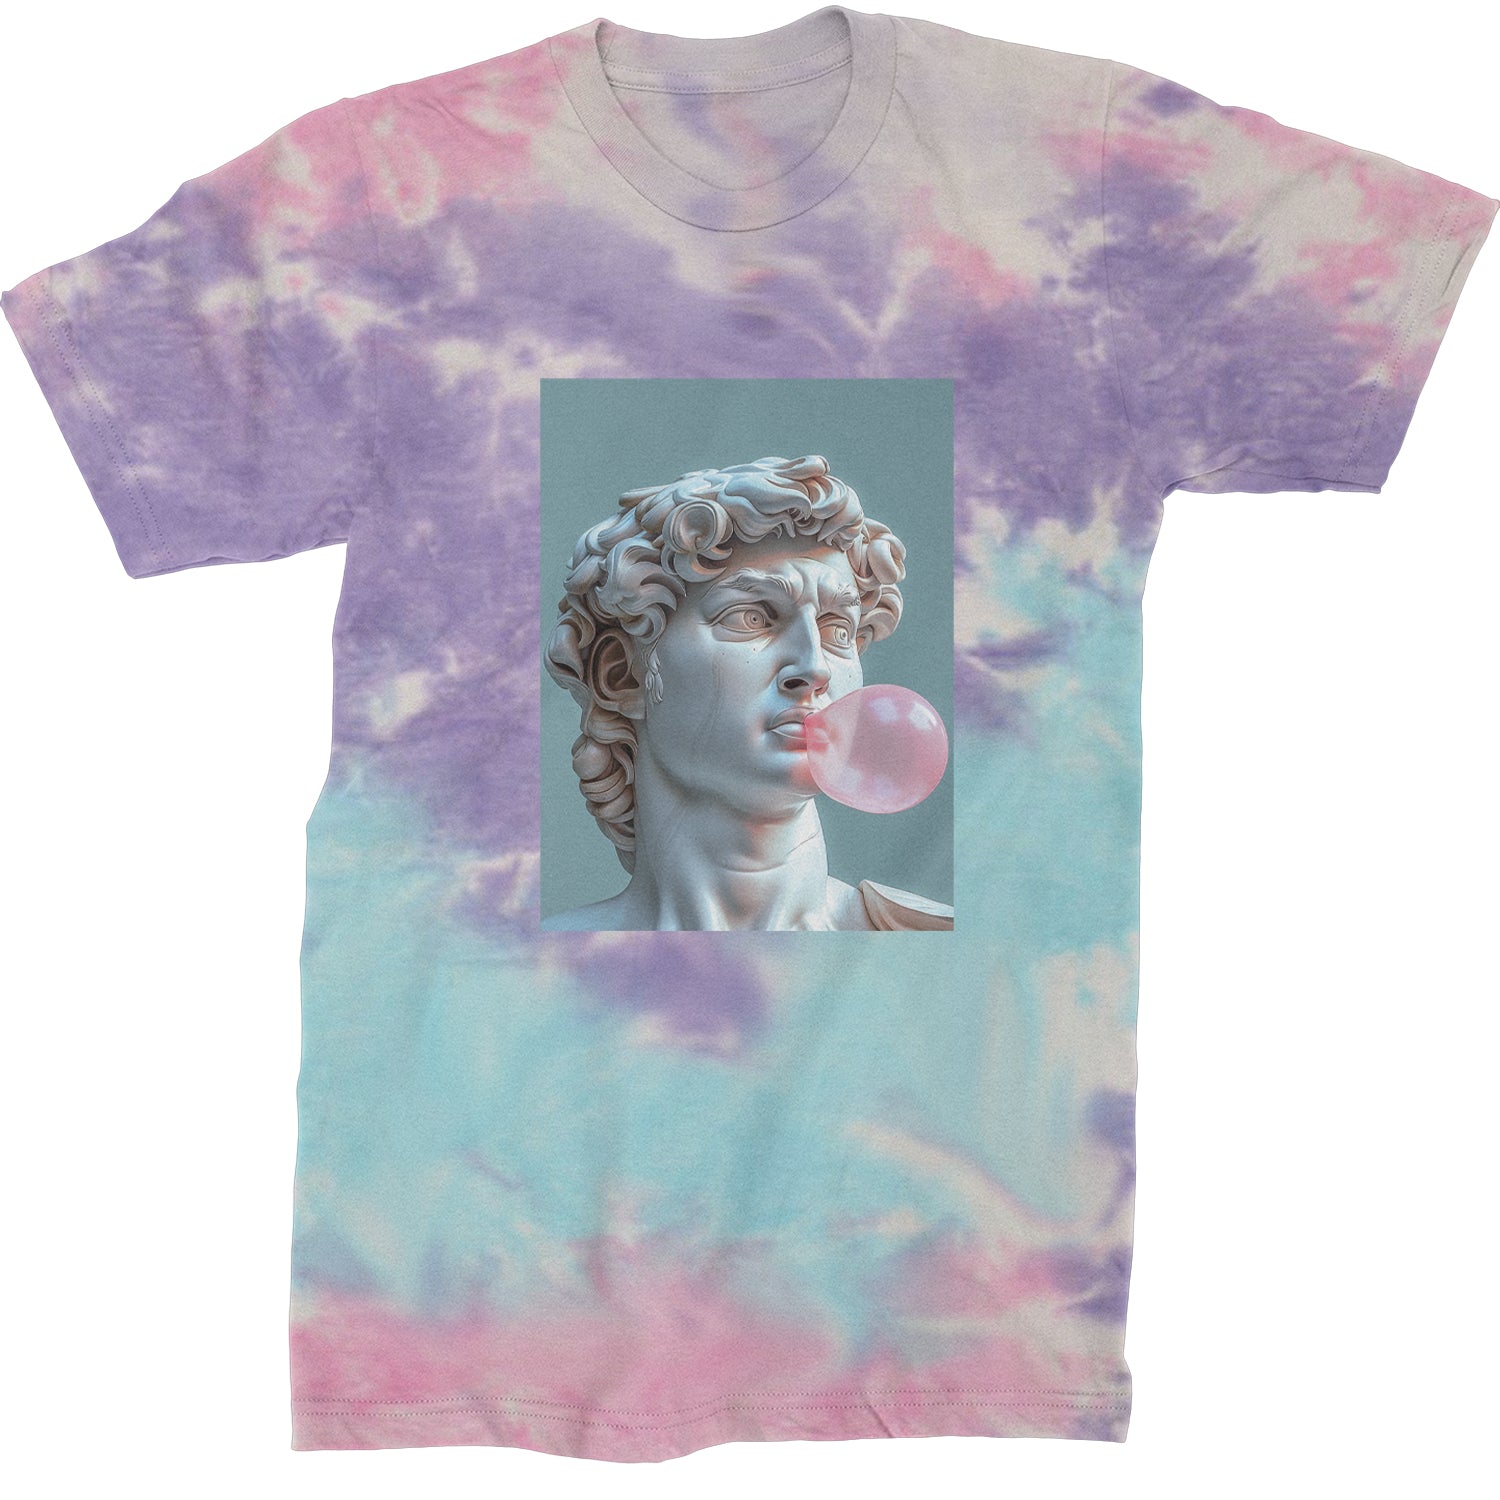 Michelangelo's David with Bubble Gum Contemporary Statue Art Mens T-shirt Tie-Dye Cotton Candy